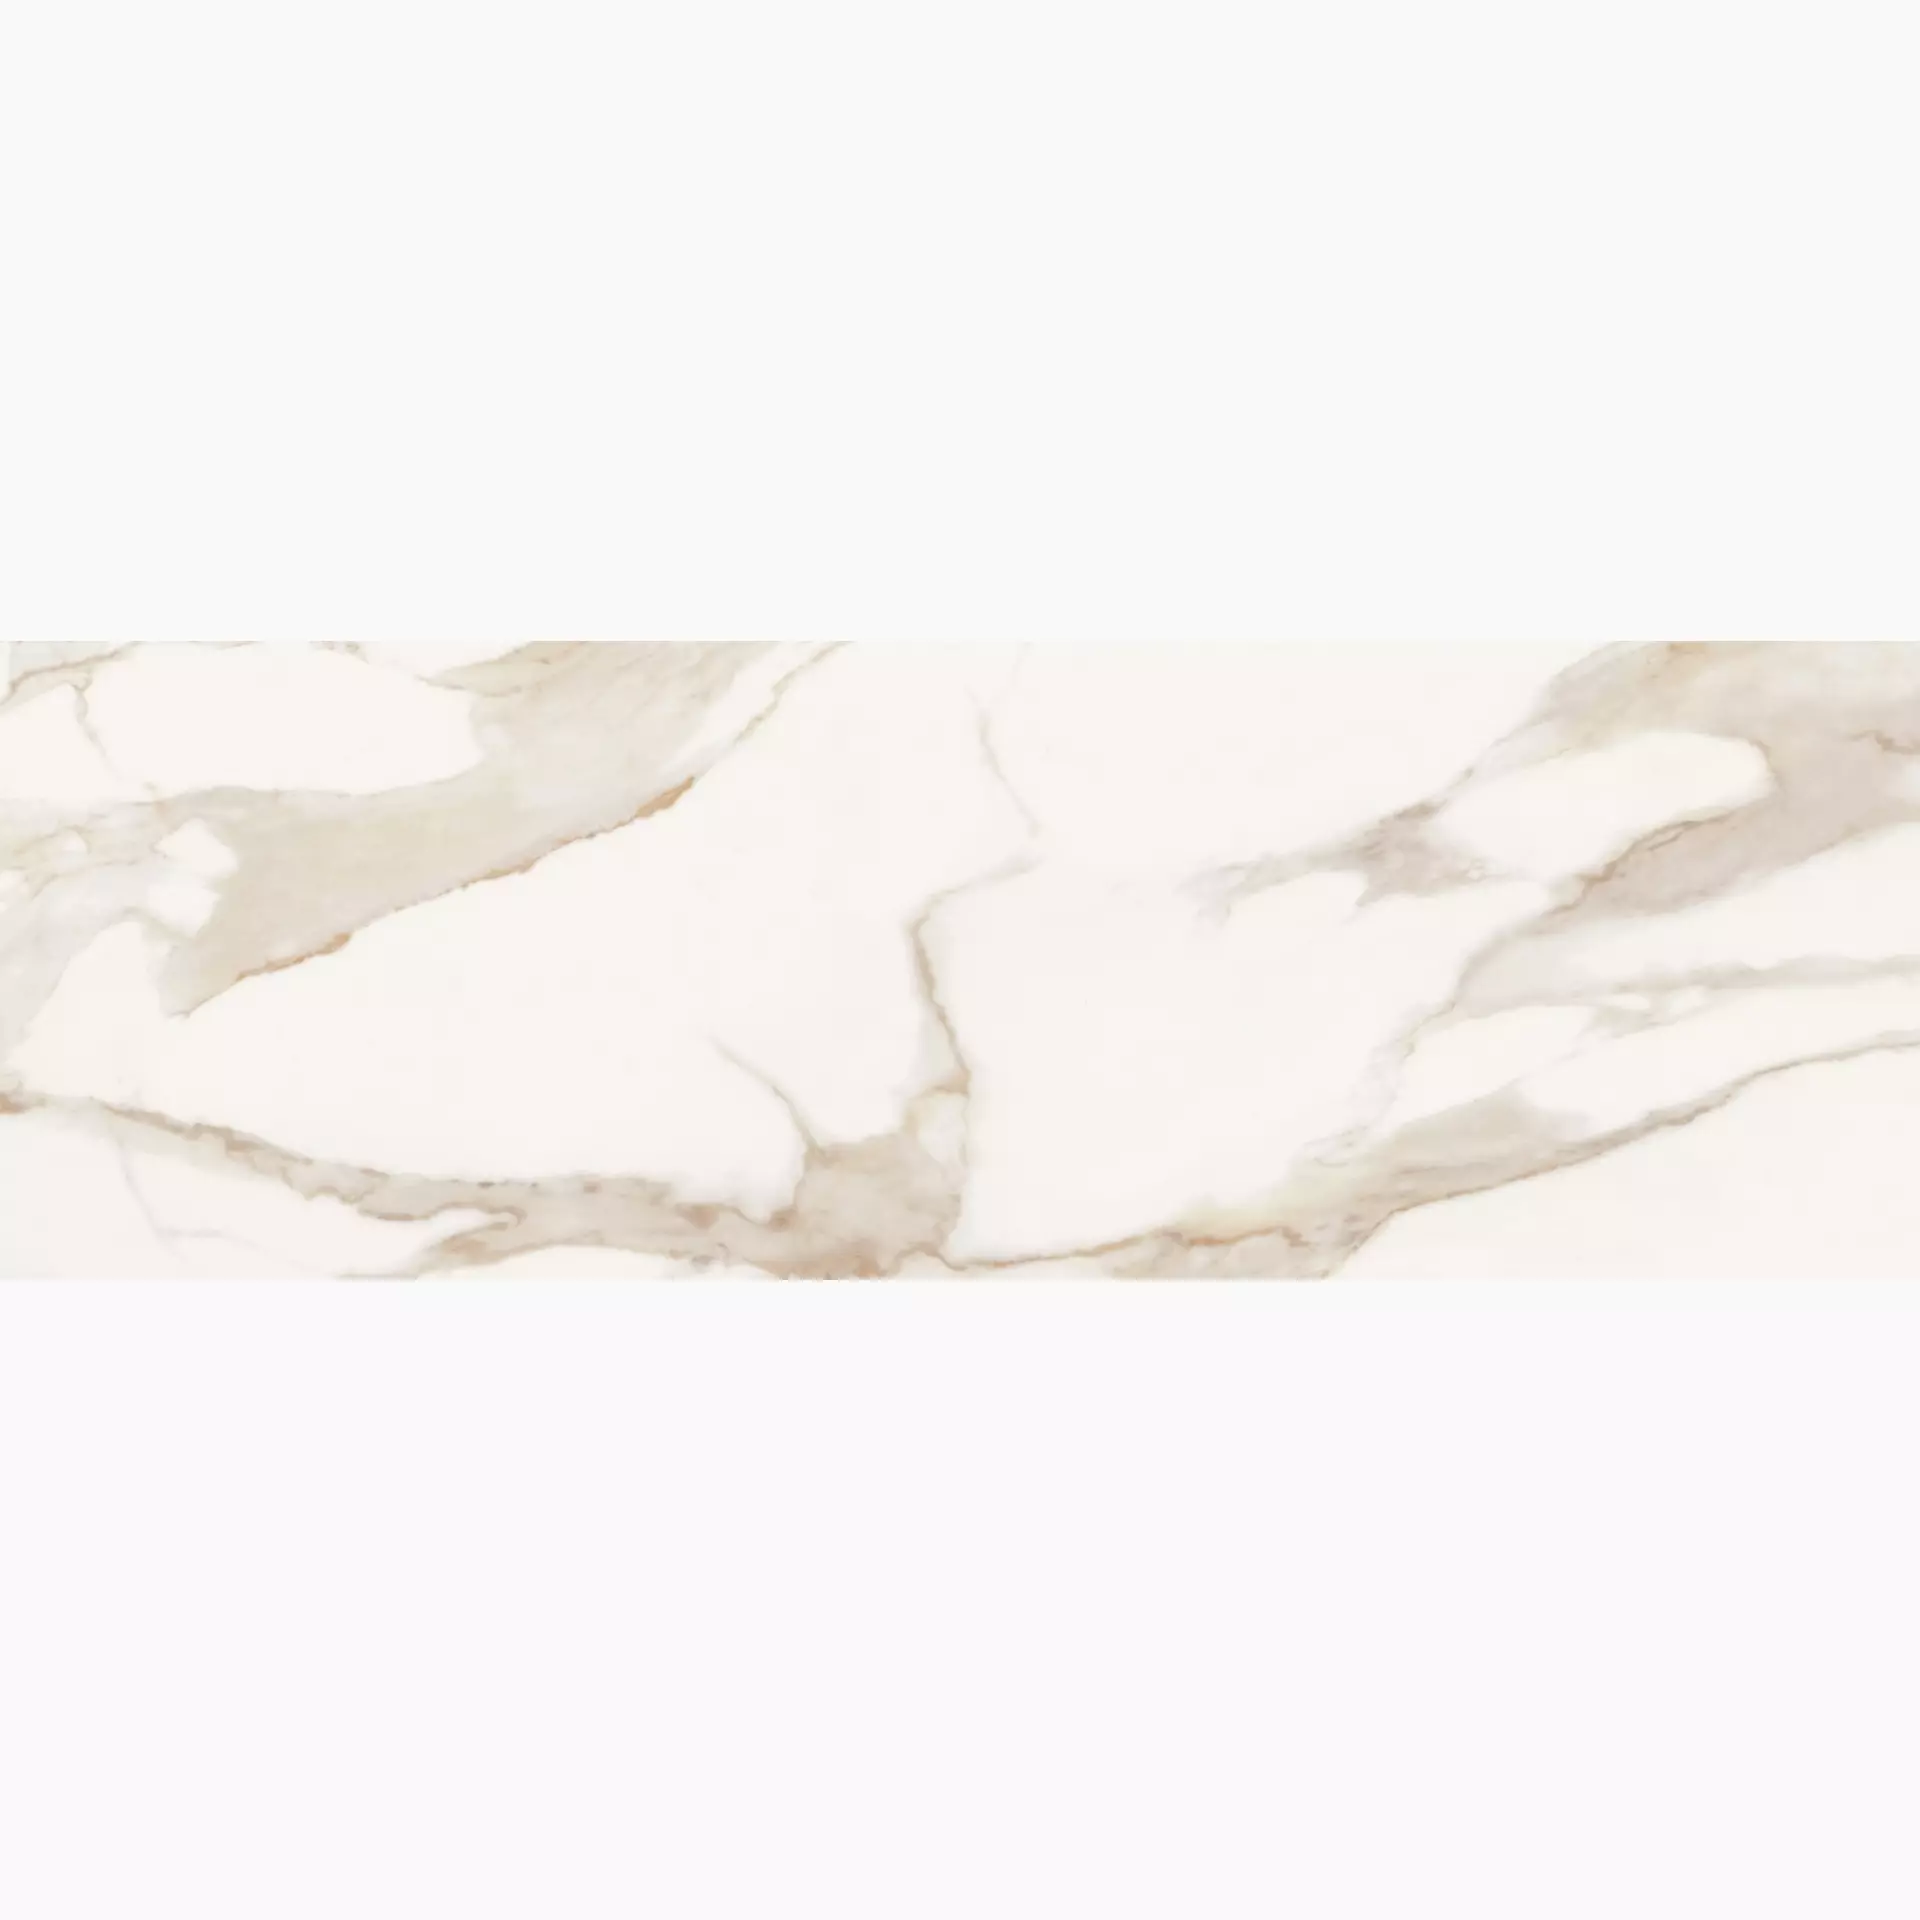 Supergres Puritym.Wall Calacatta Naturale – Matt Calacatta PCW9 matt natur 30,5x91,5cm rektifiziert 8,5mm